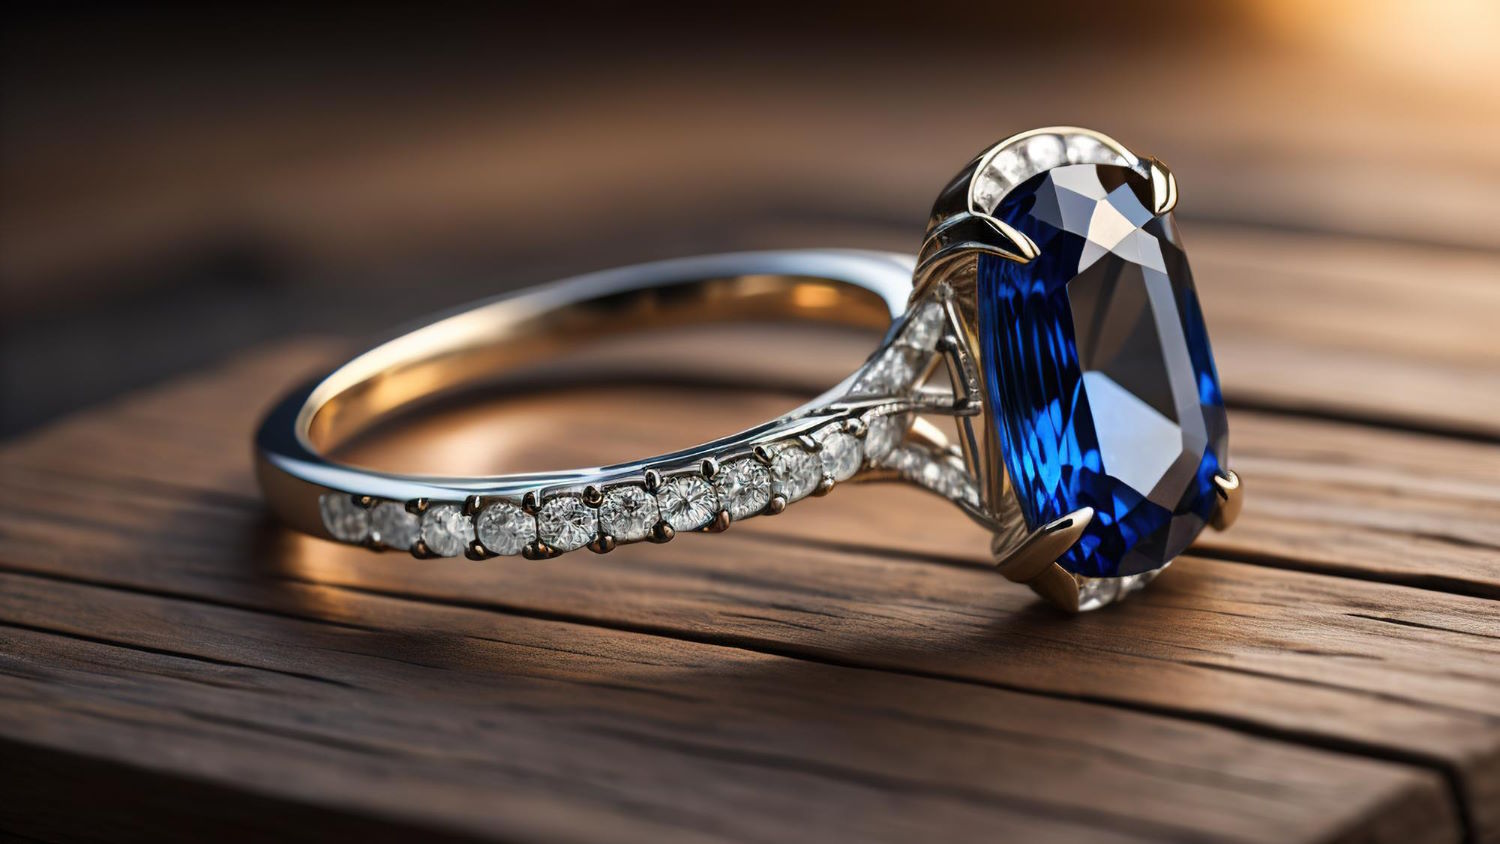 Sekrety zabezpieczania cennych klejnotów – Jak skutecznie ubezpieczyć swoją biżuterię?